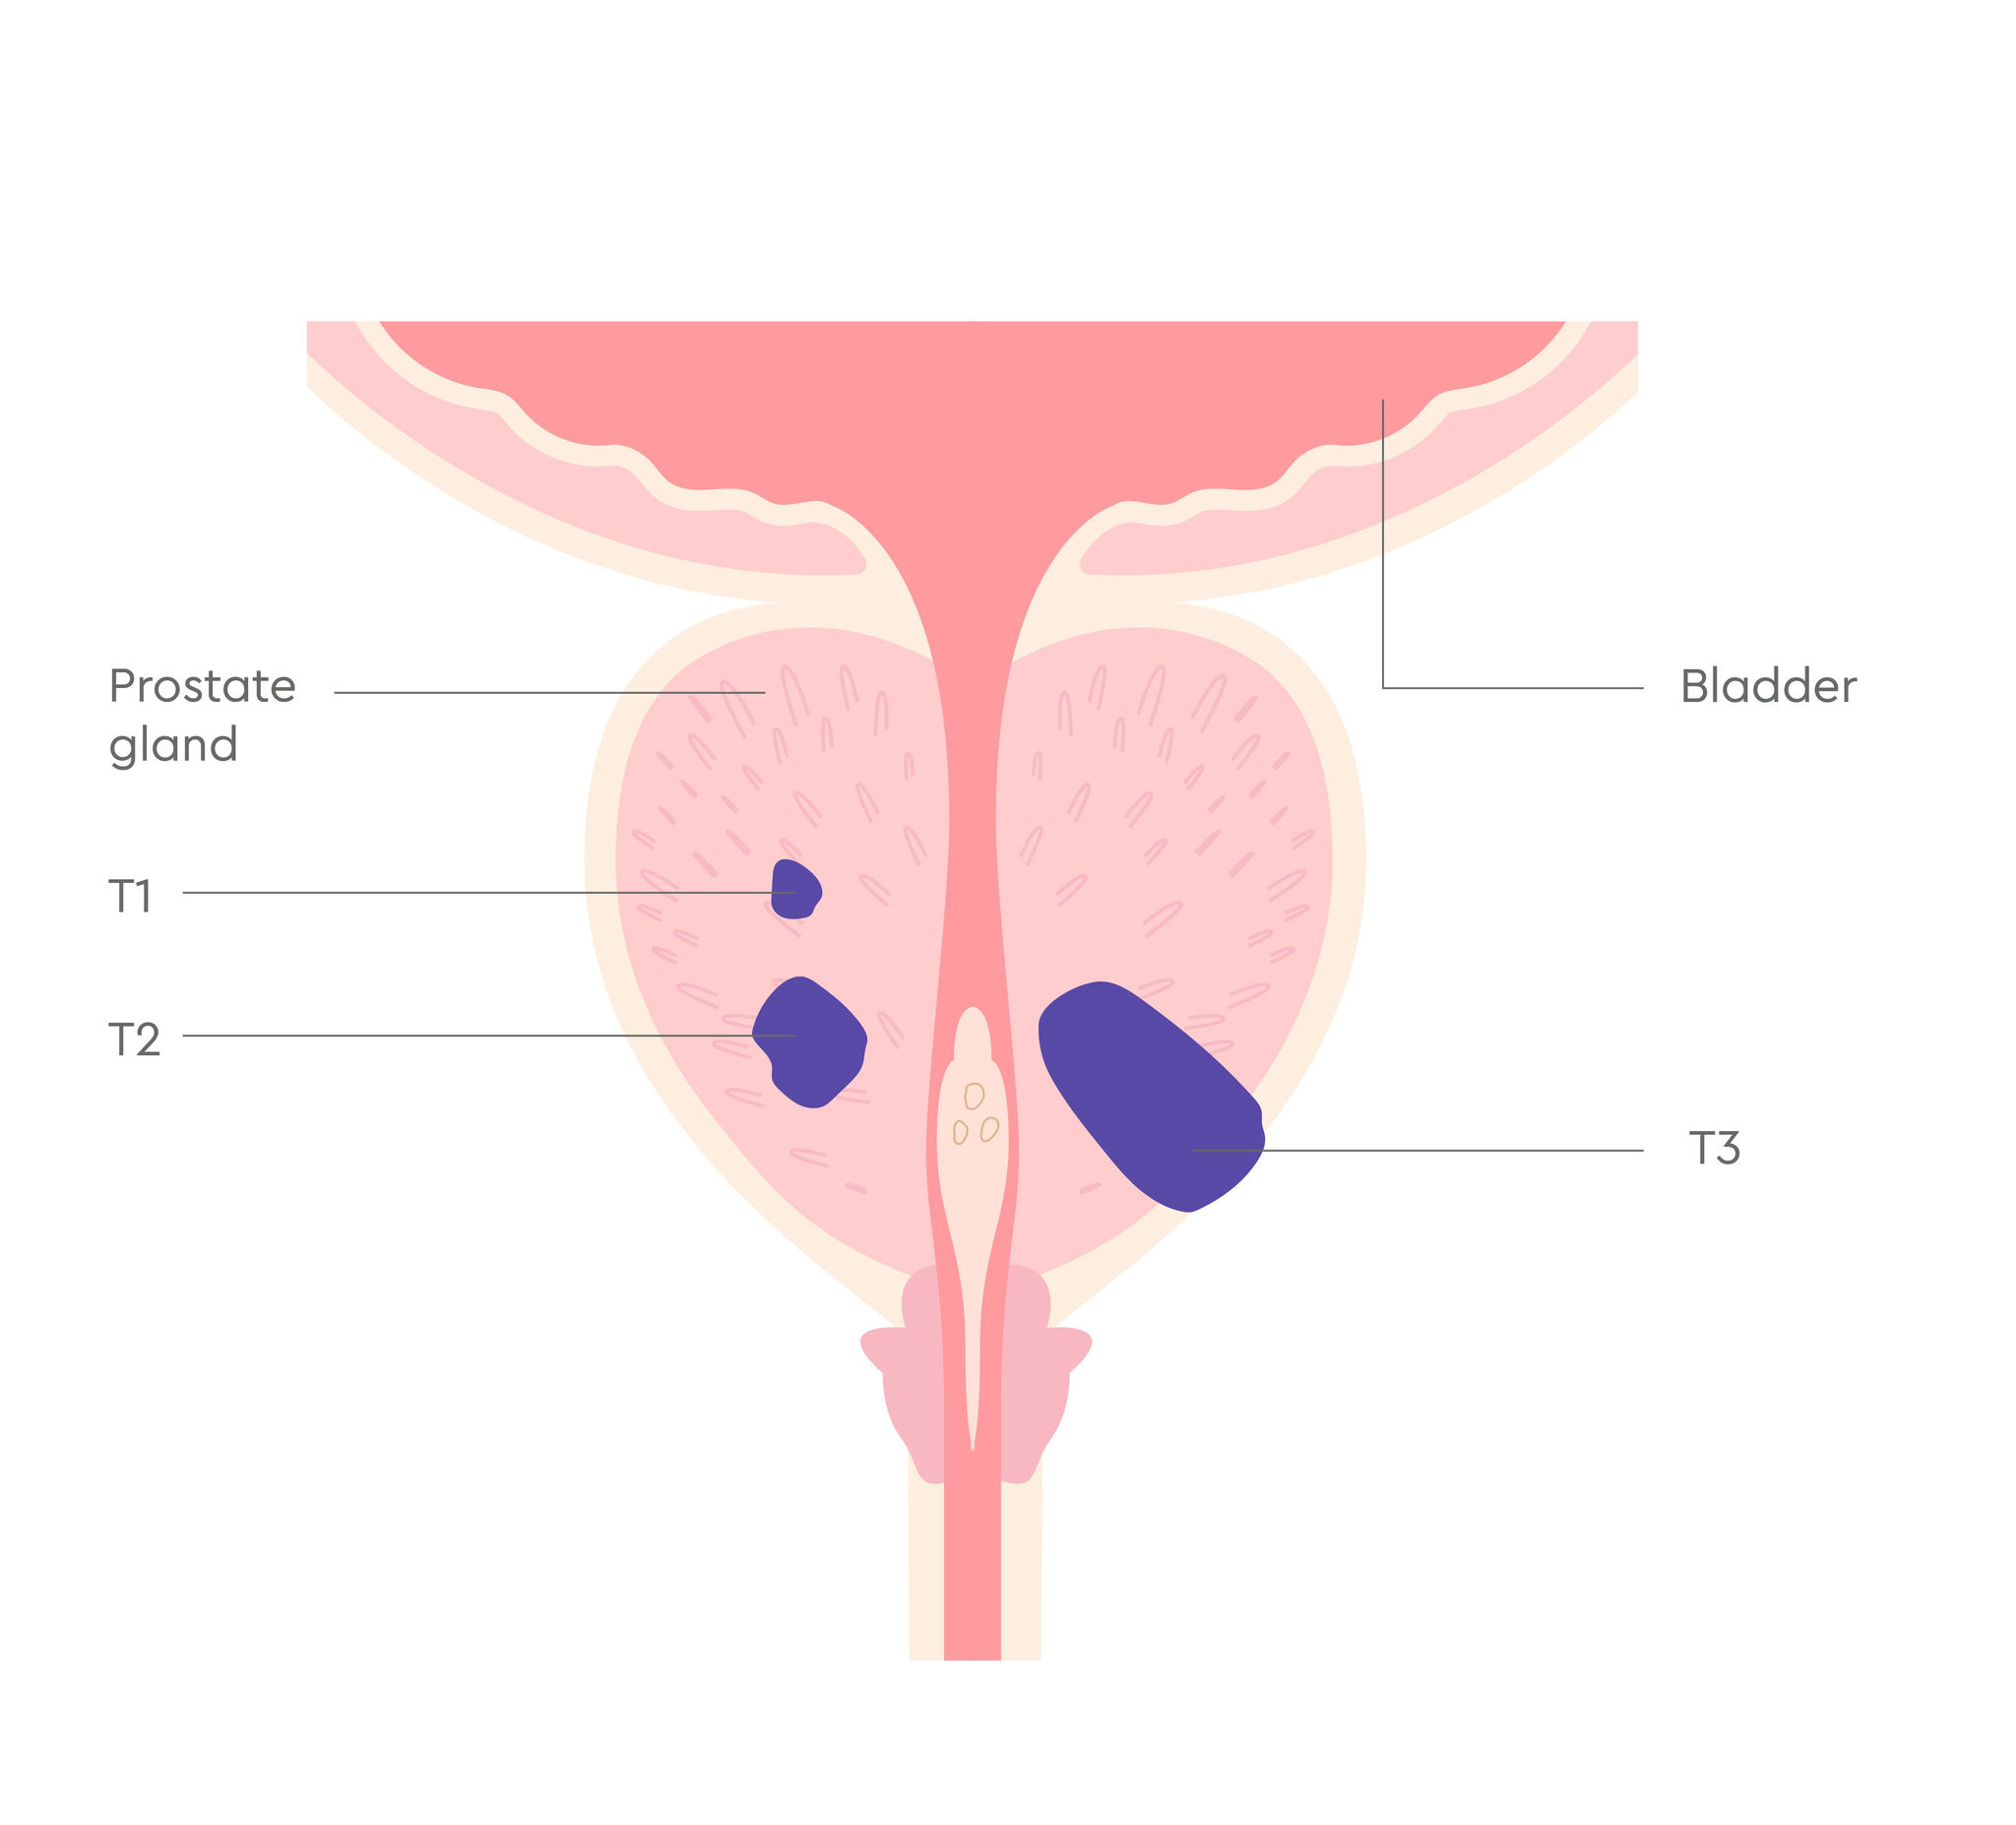 3380_UK_Prostate cancer stages illustrations_V1_FA